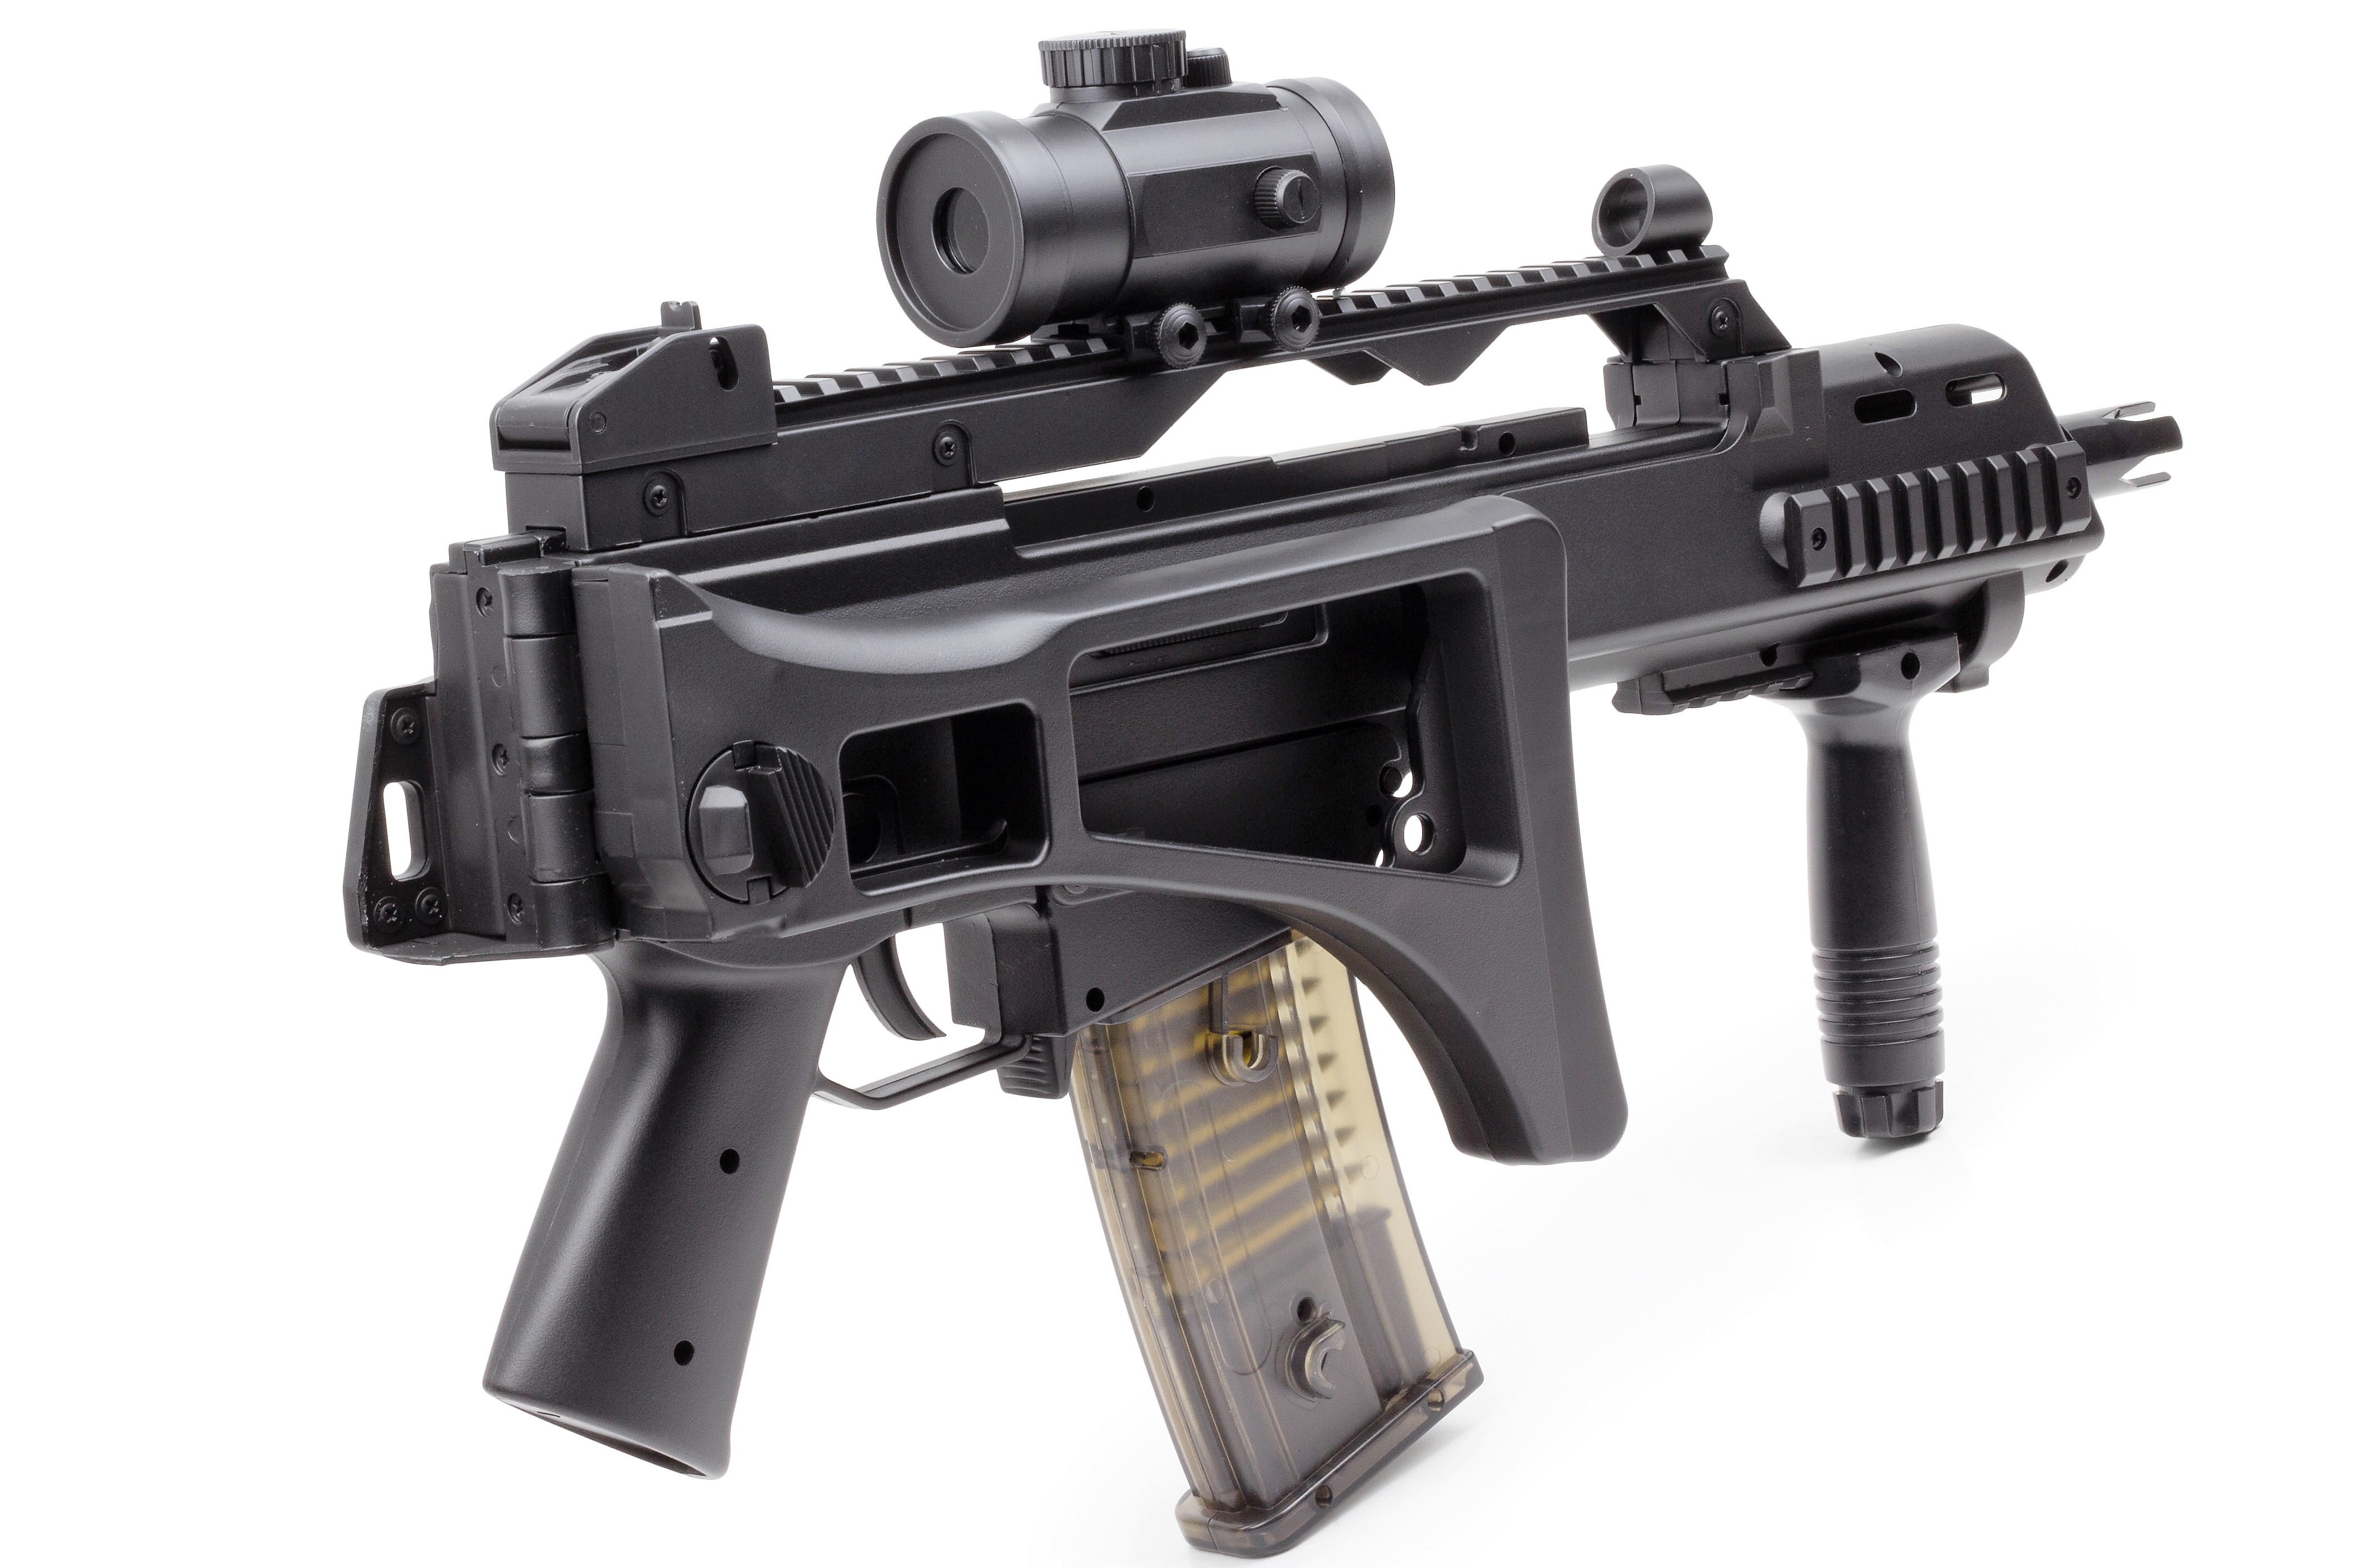 Waffen AEG Softair VOLLAUTOMATISCH Elektrisch Gewehr M85